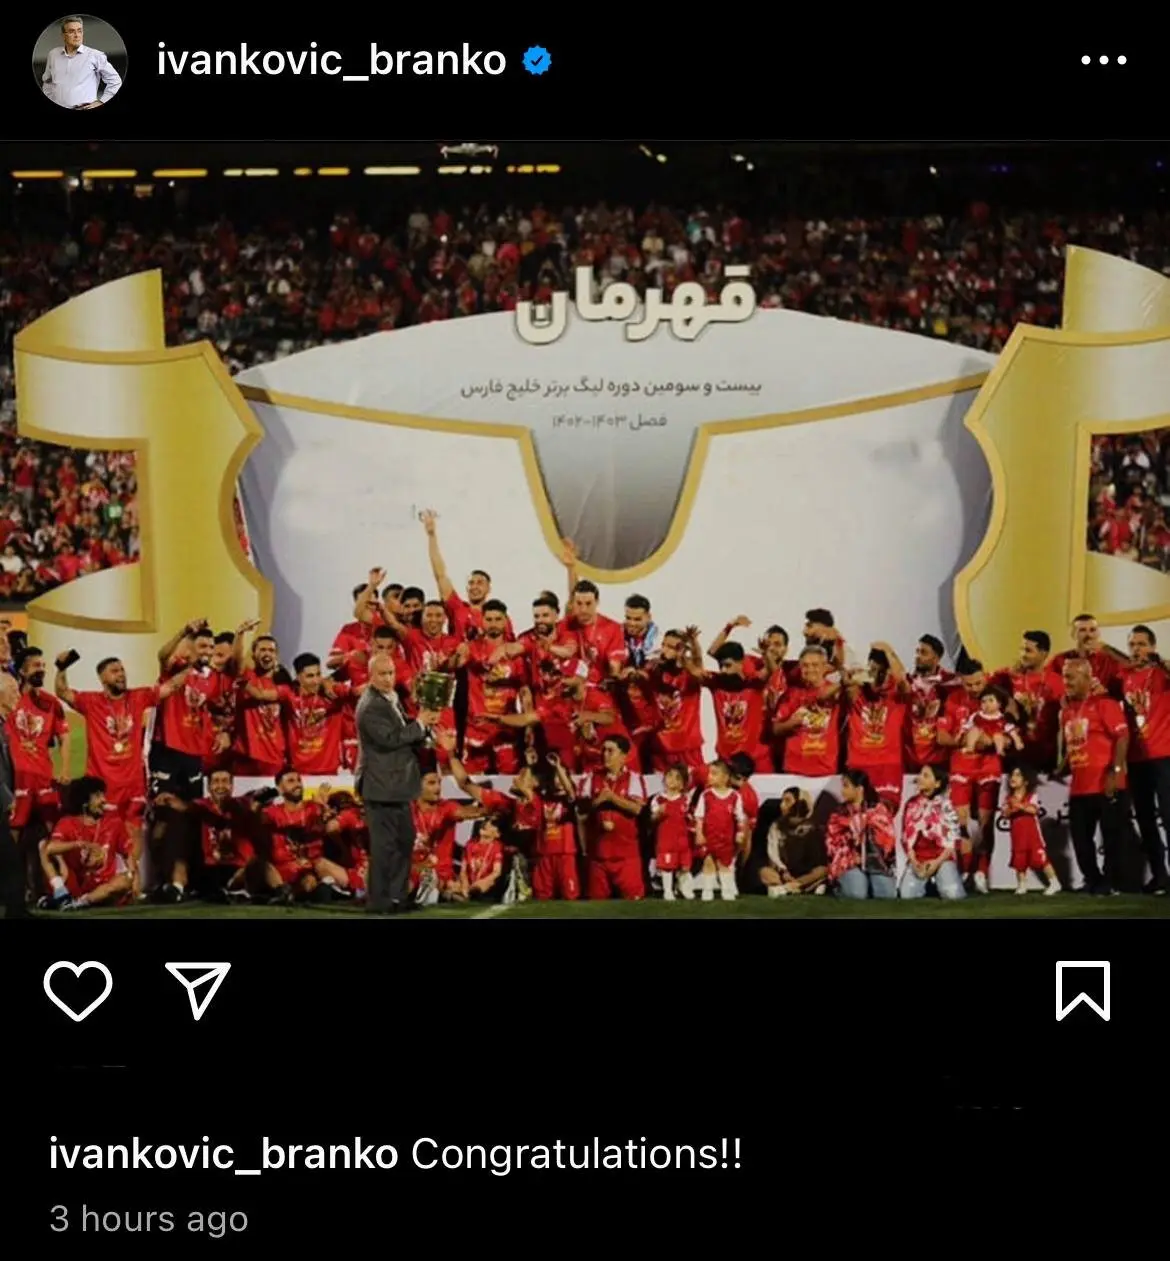  تبریک برانکو برای قهرمانی پرسپولیس در لیگ 23